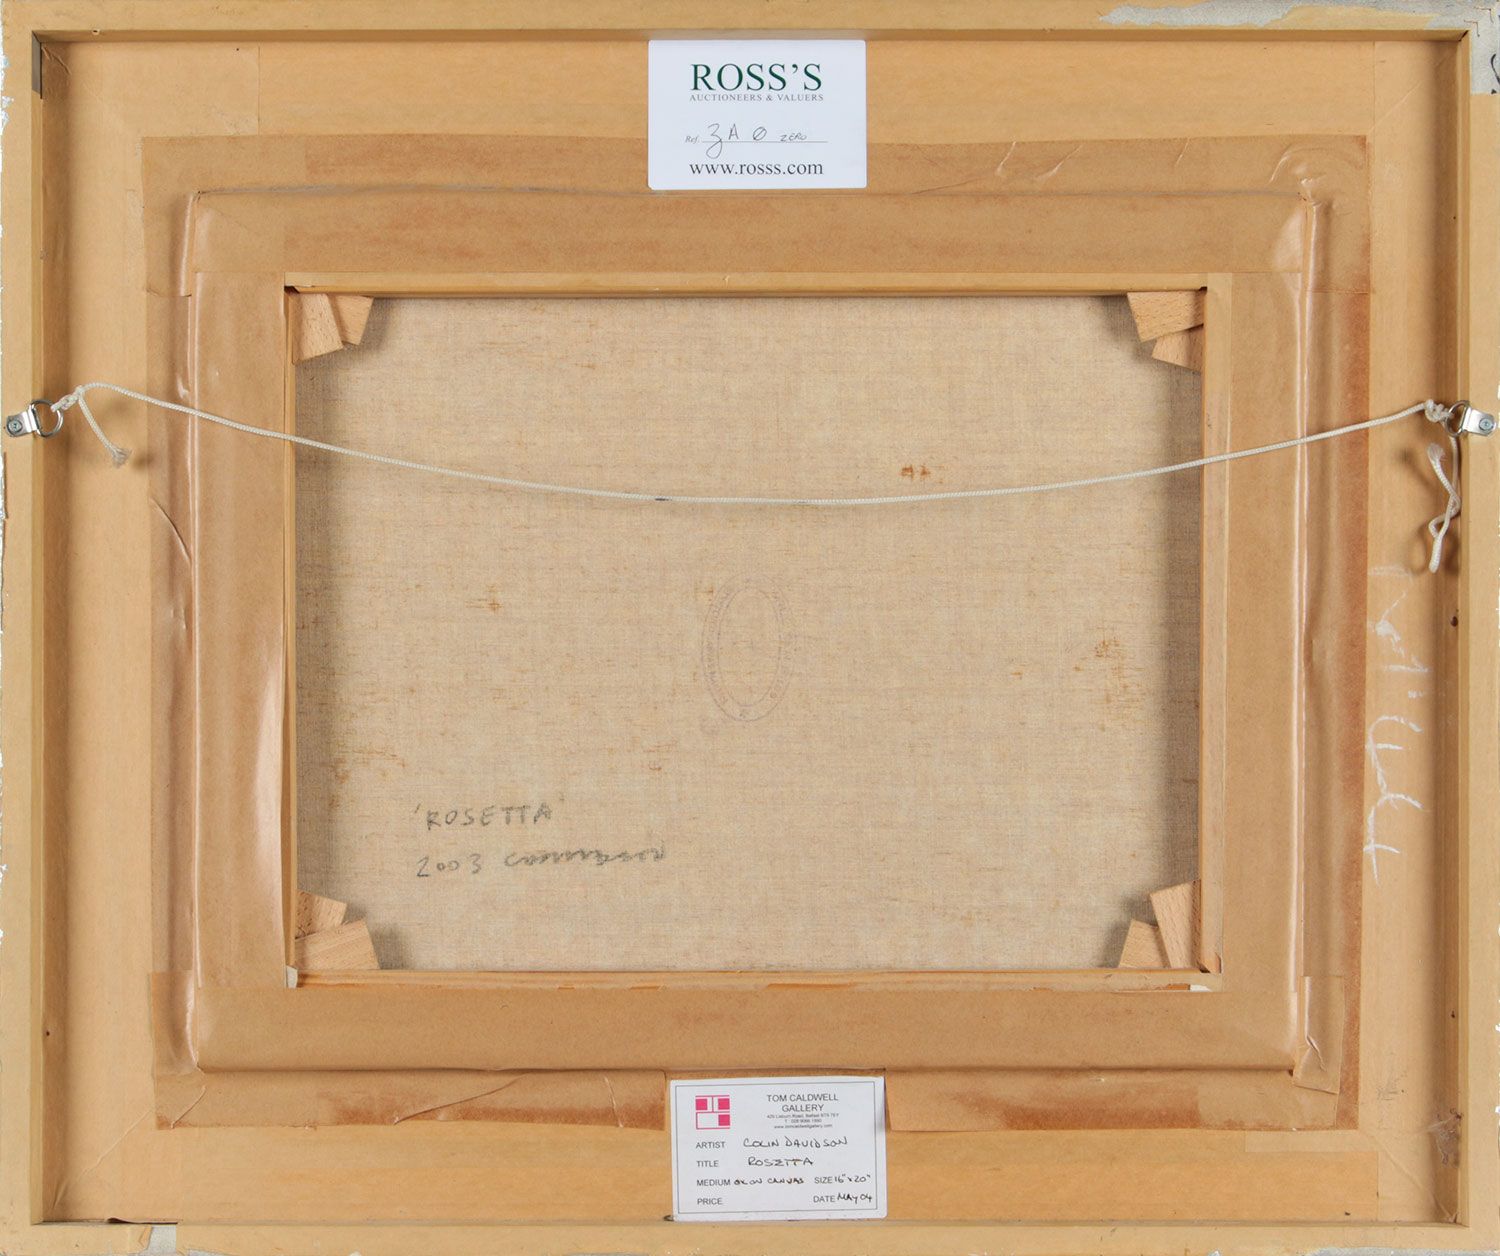 ROSETTA by Colin Davidson RUA at Ross's Online Art Auctions